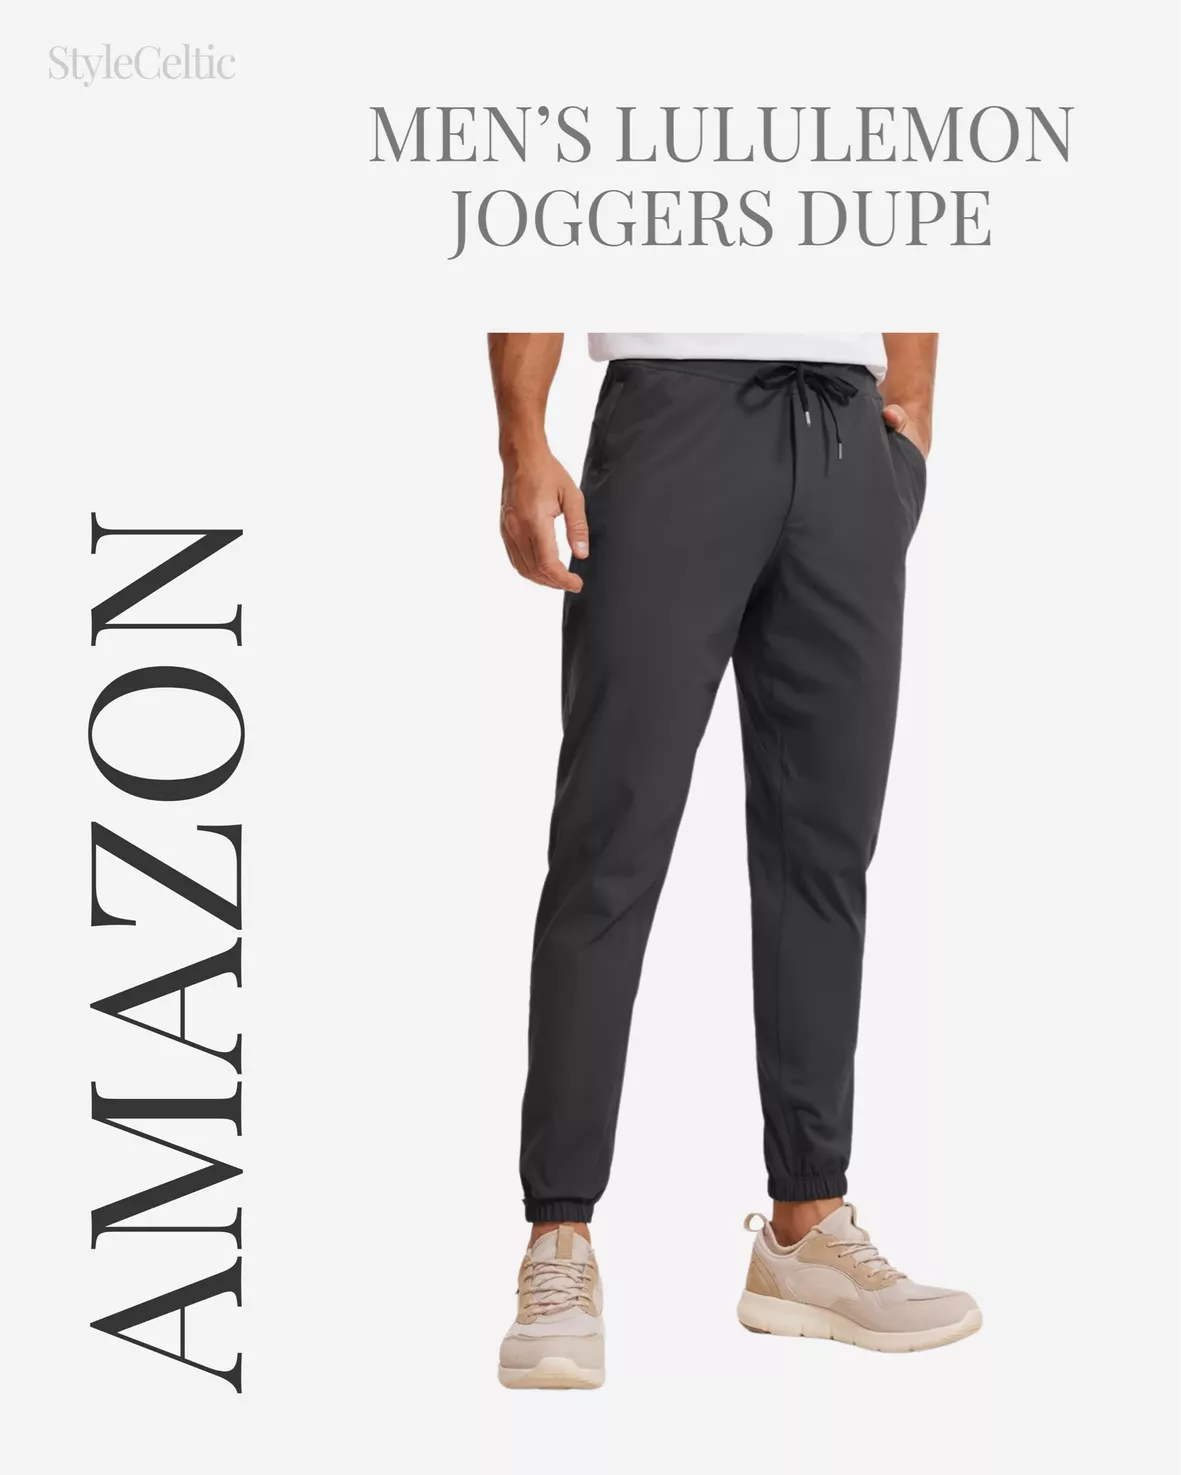 lululemon sweatpants dupe - Buy lululemon sweatpants dupe with